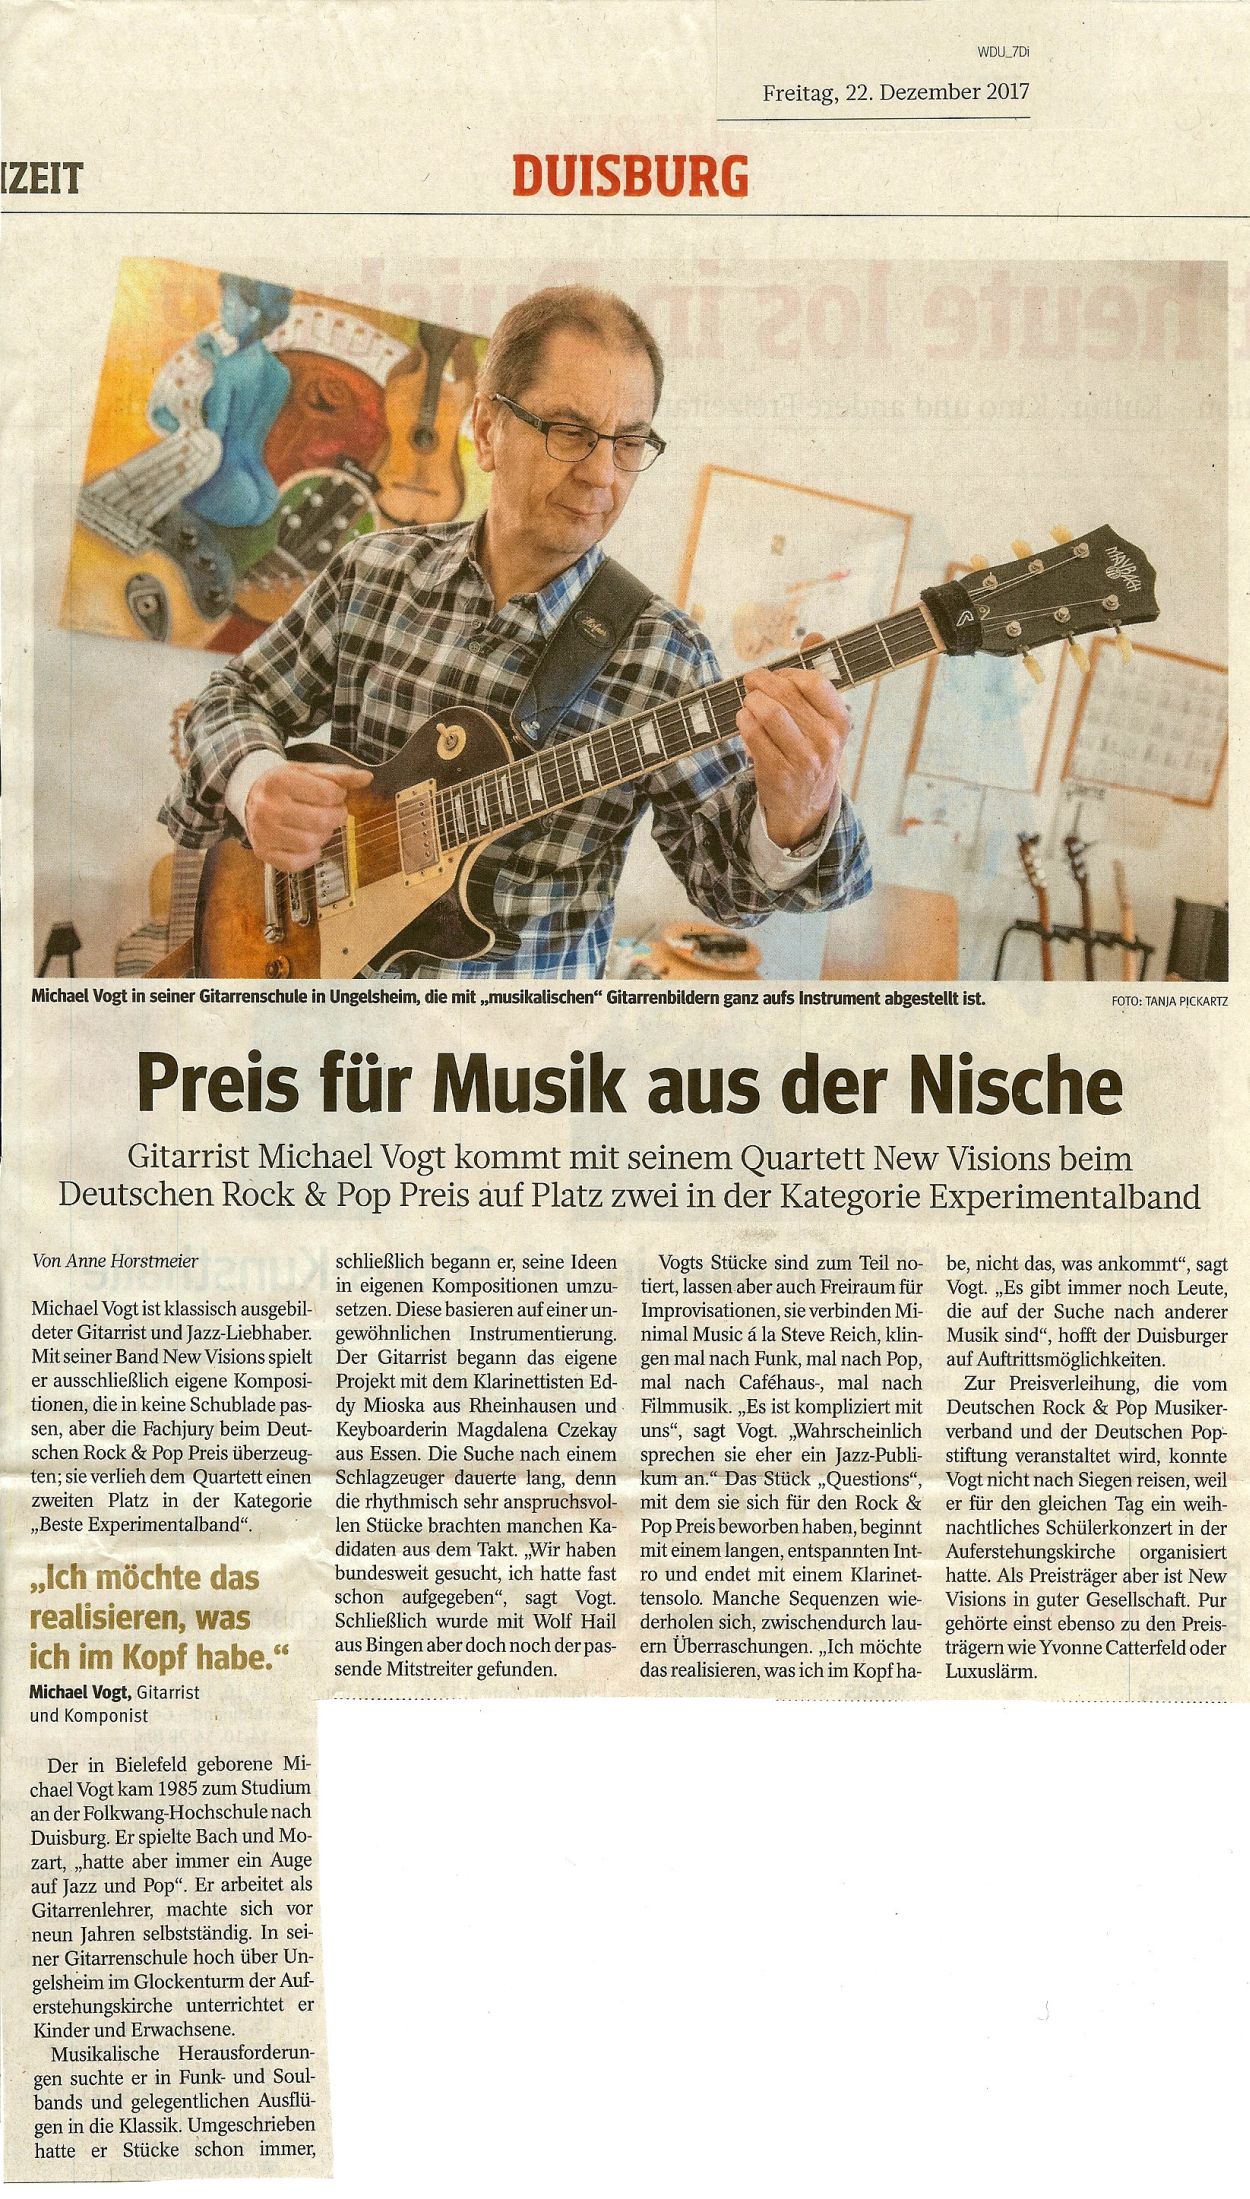 Presseartikel aus der Westdeutschen Allgemeinen Zeitung (WAZ, Lokalteil Duisburg) vom 22.12.2017 über Gitarrenlehrer Michael Vogt und seine Band 'New Visions', die in 2017 den 2. Preis beim Deutschen Rock & Pop Preis gewonnen hat.